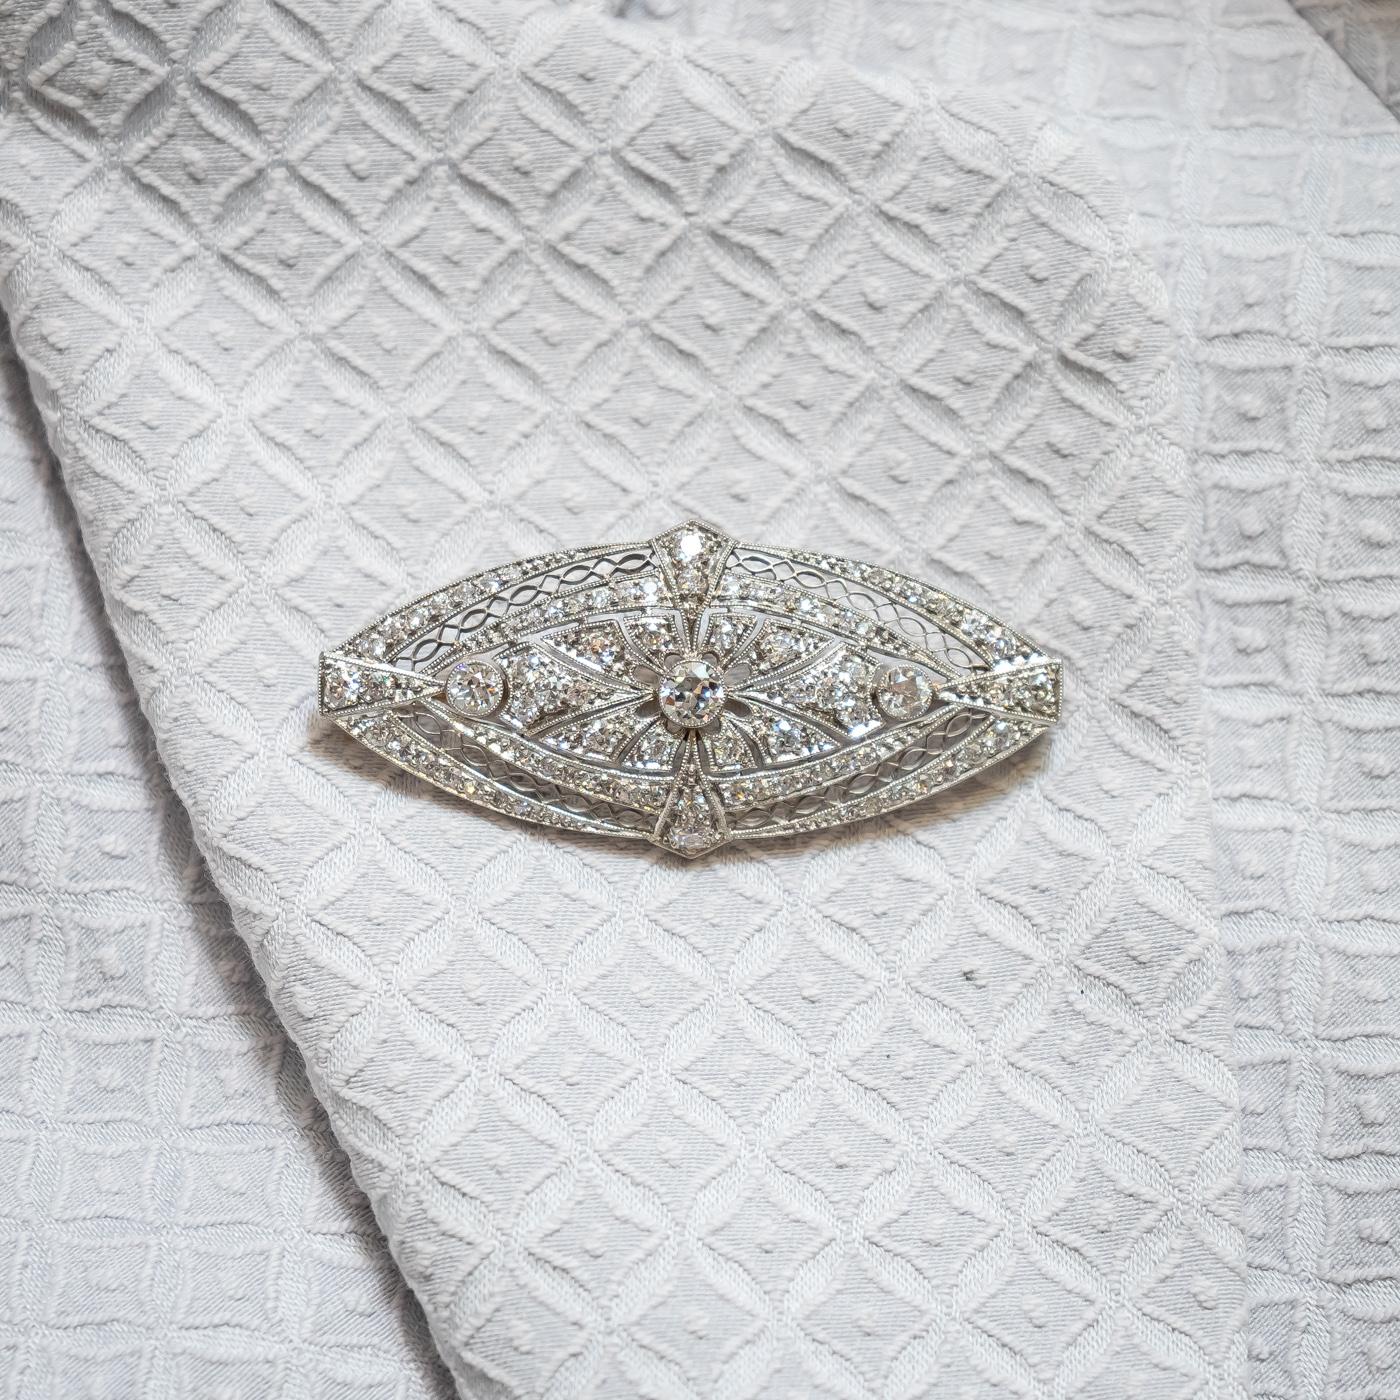 Broche Art déco en diamants, sertie de diamants de taille édouardienne, dans une plaque ajourée en forme de navette, montée en platine, vers 1925, avec une épingle en or, numérotée 8994, avec le numéro d'inventaire 1678. Poids total des diamants